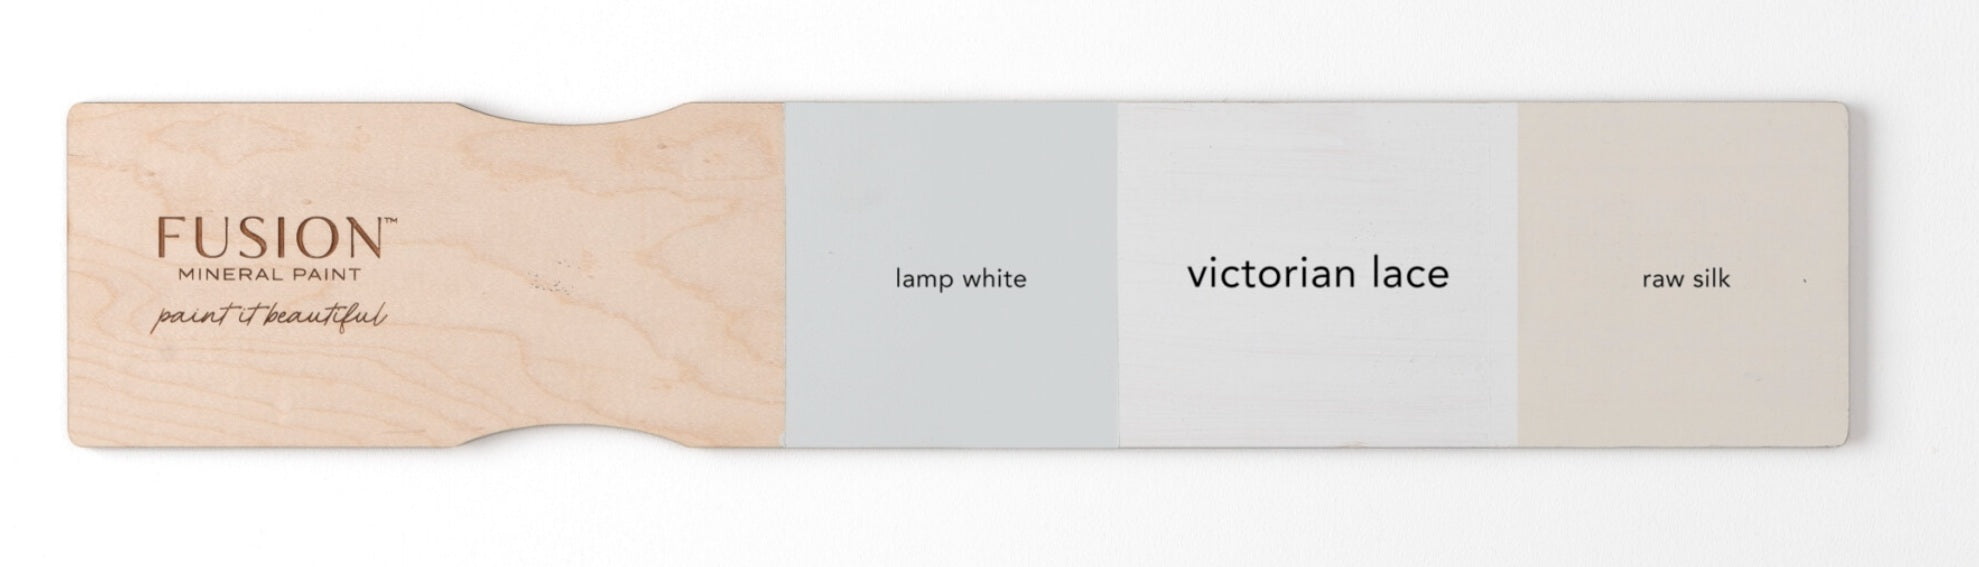 FMP Victorian Lace Colour Comparison 